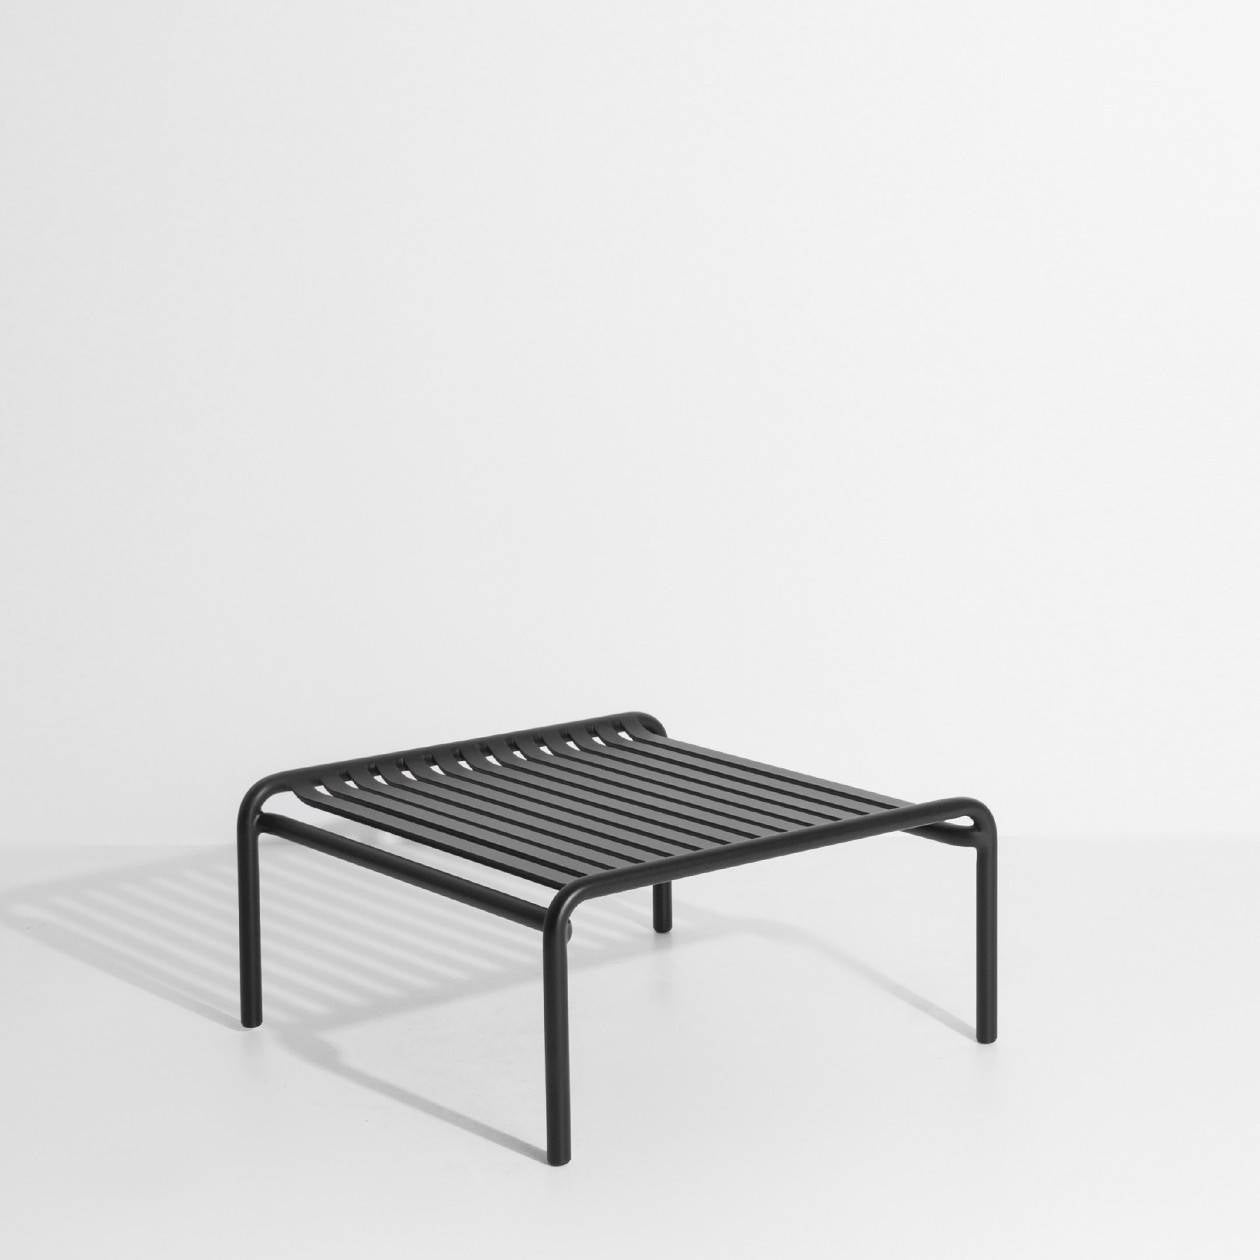 Week-End Coffee Table small in Black präsentiert im Onlineshop von KAQTU Design AG. Beistelltisch Outdoor ist von Petite Friture